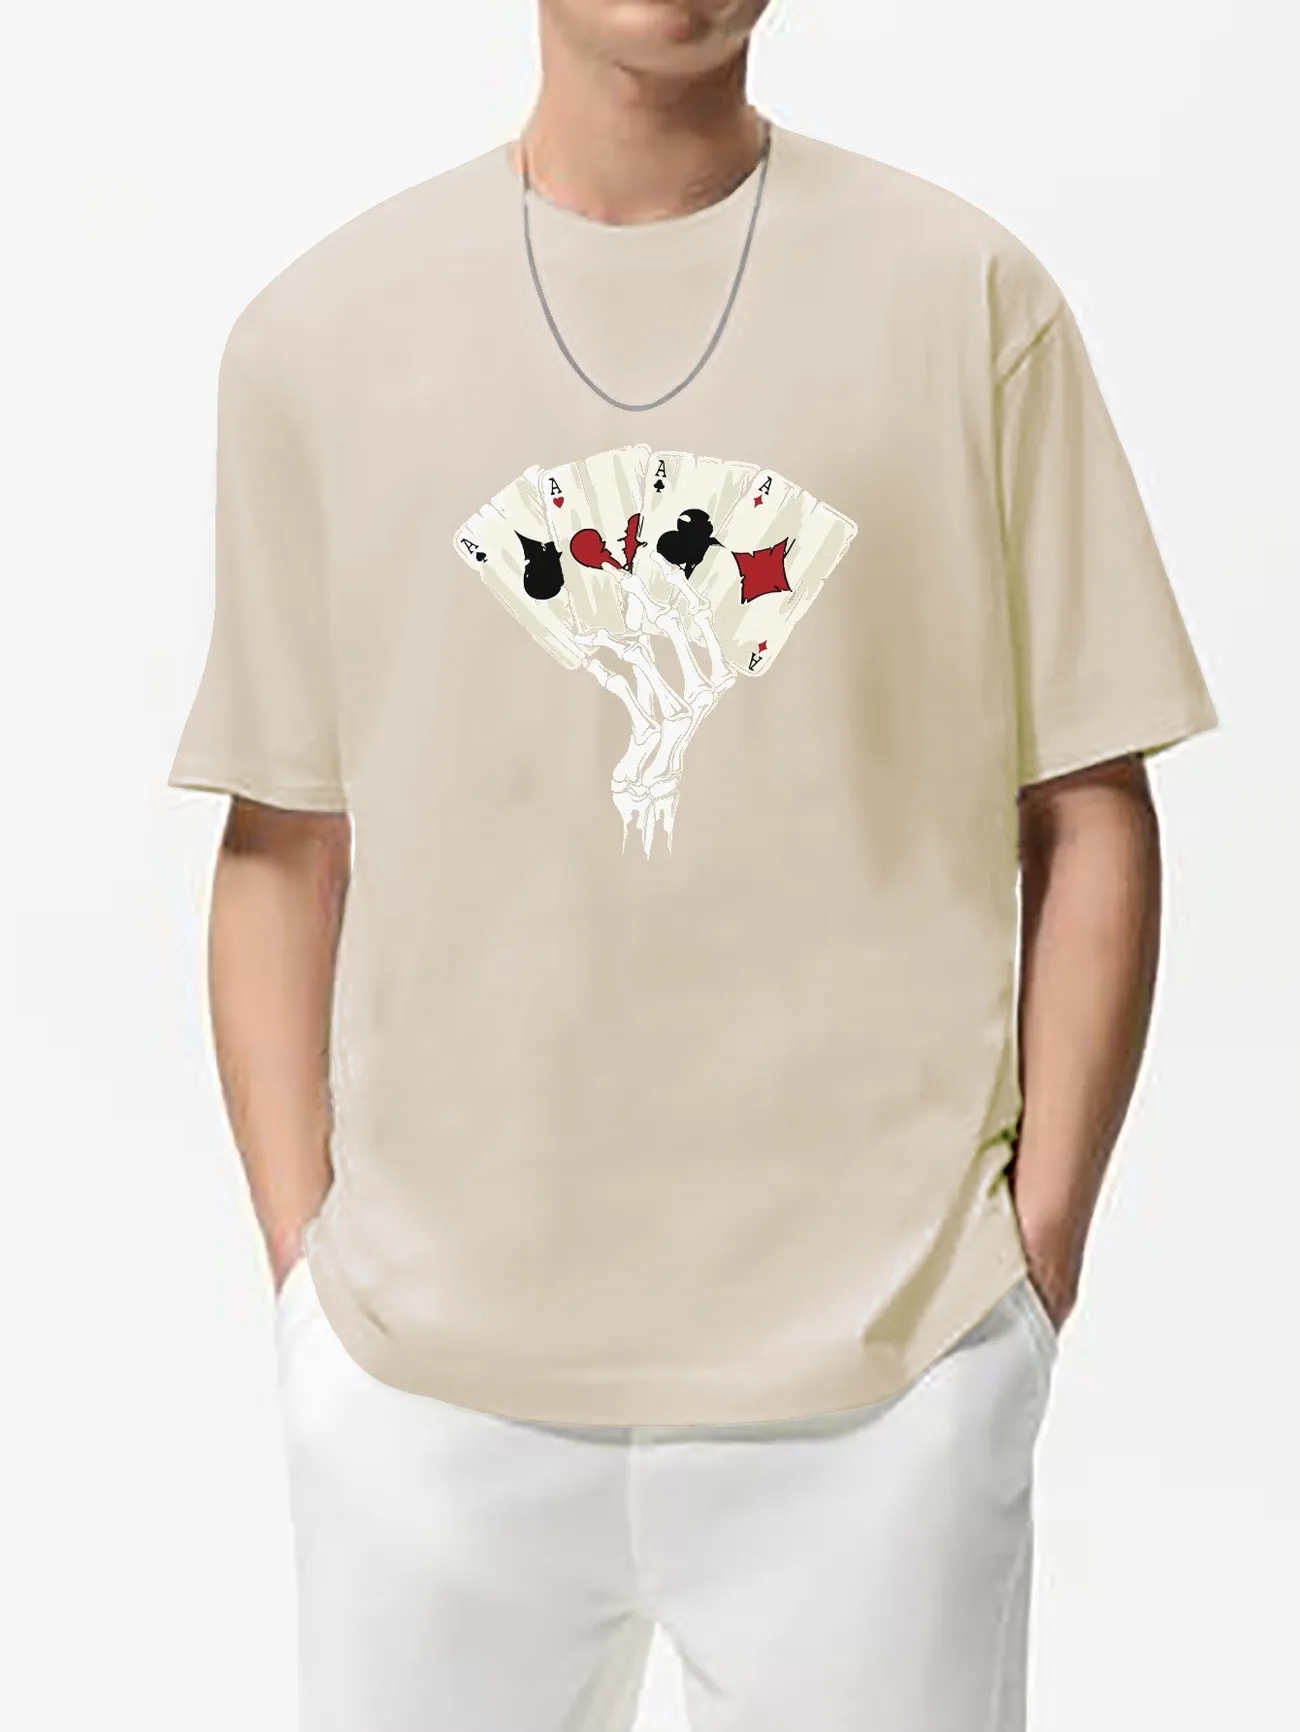 Trendy T-shirt, Men's Poker Cards & Skeletal Hand Graphic Print T-shirt  Oversized Tees Short Sleeve Tops For Summer, Men's Clothing, Plus Size -  Temu Bahrain